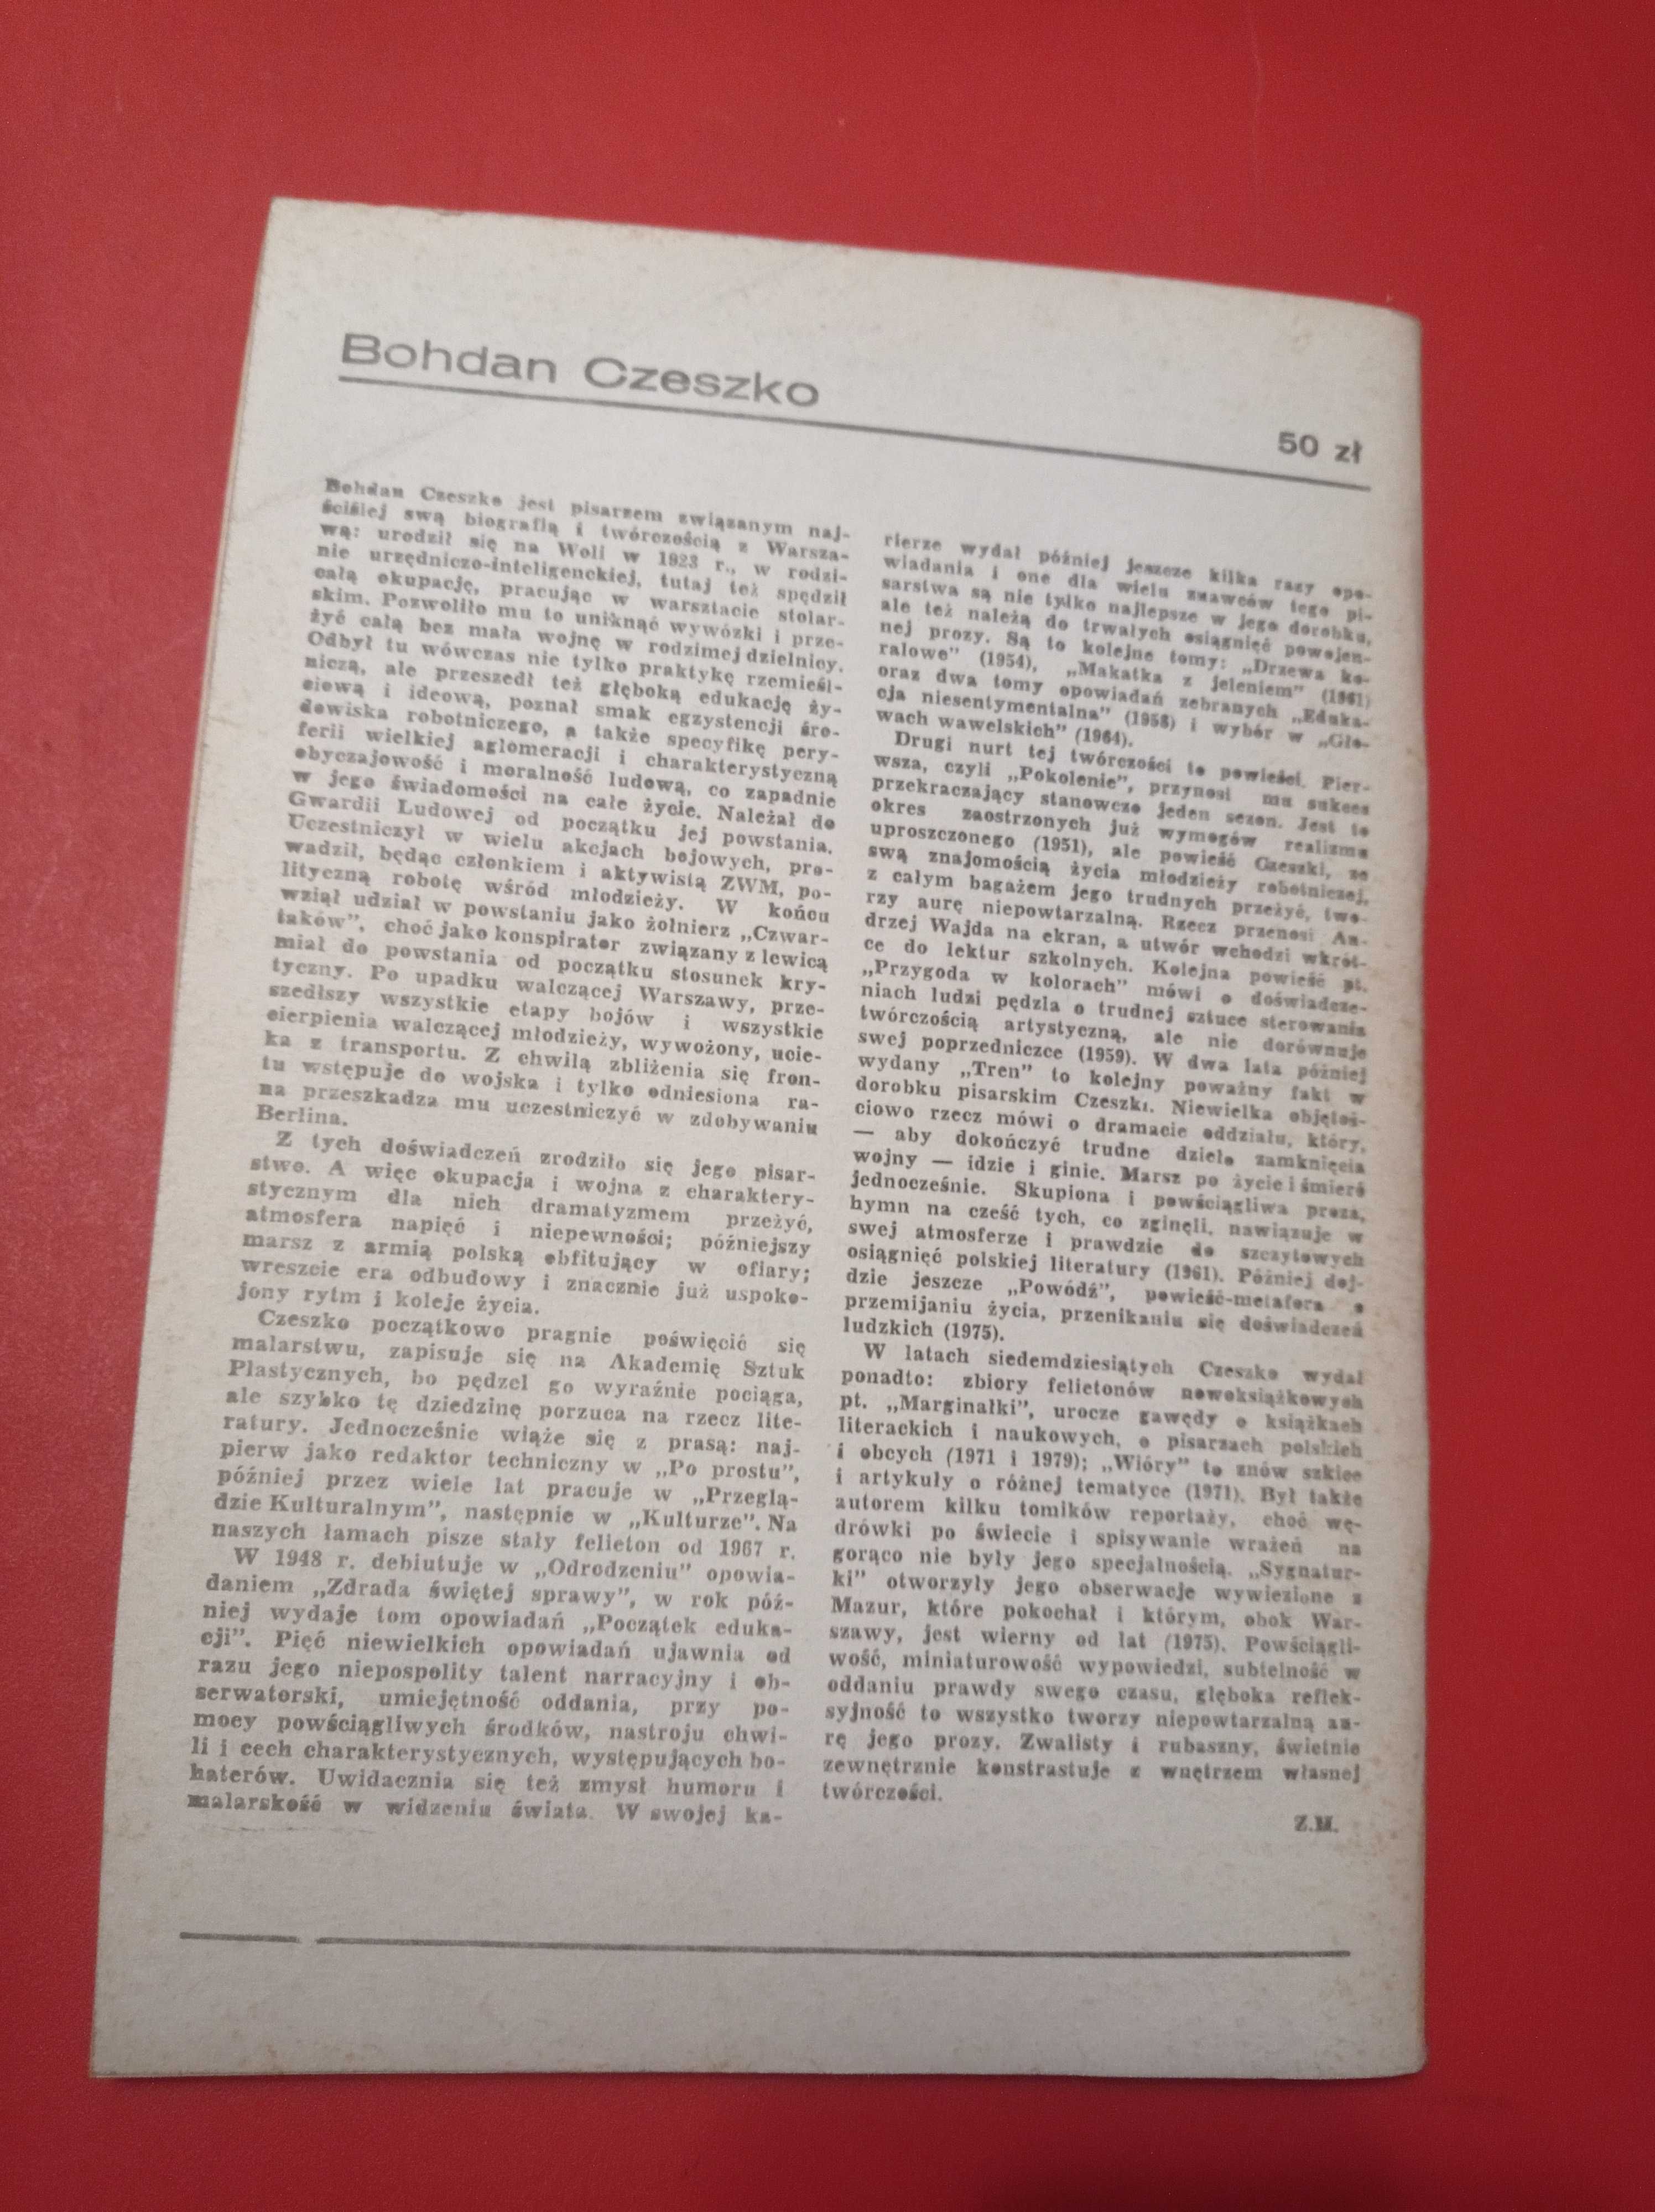 Nowe książki, nr 1, styczeń 1984, Bohdan Czeszko